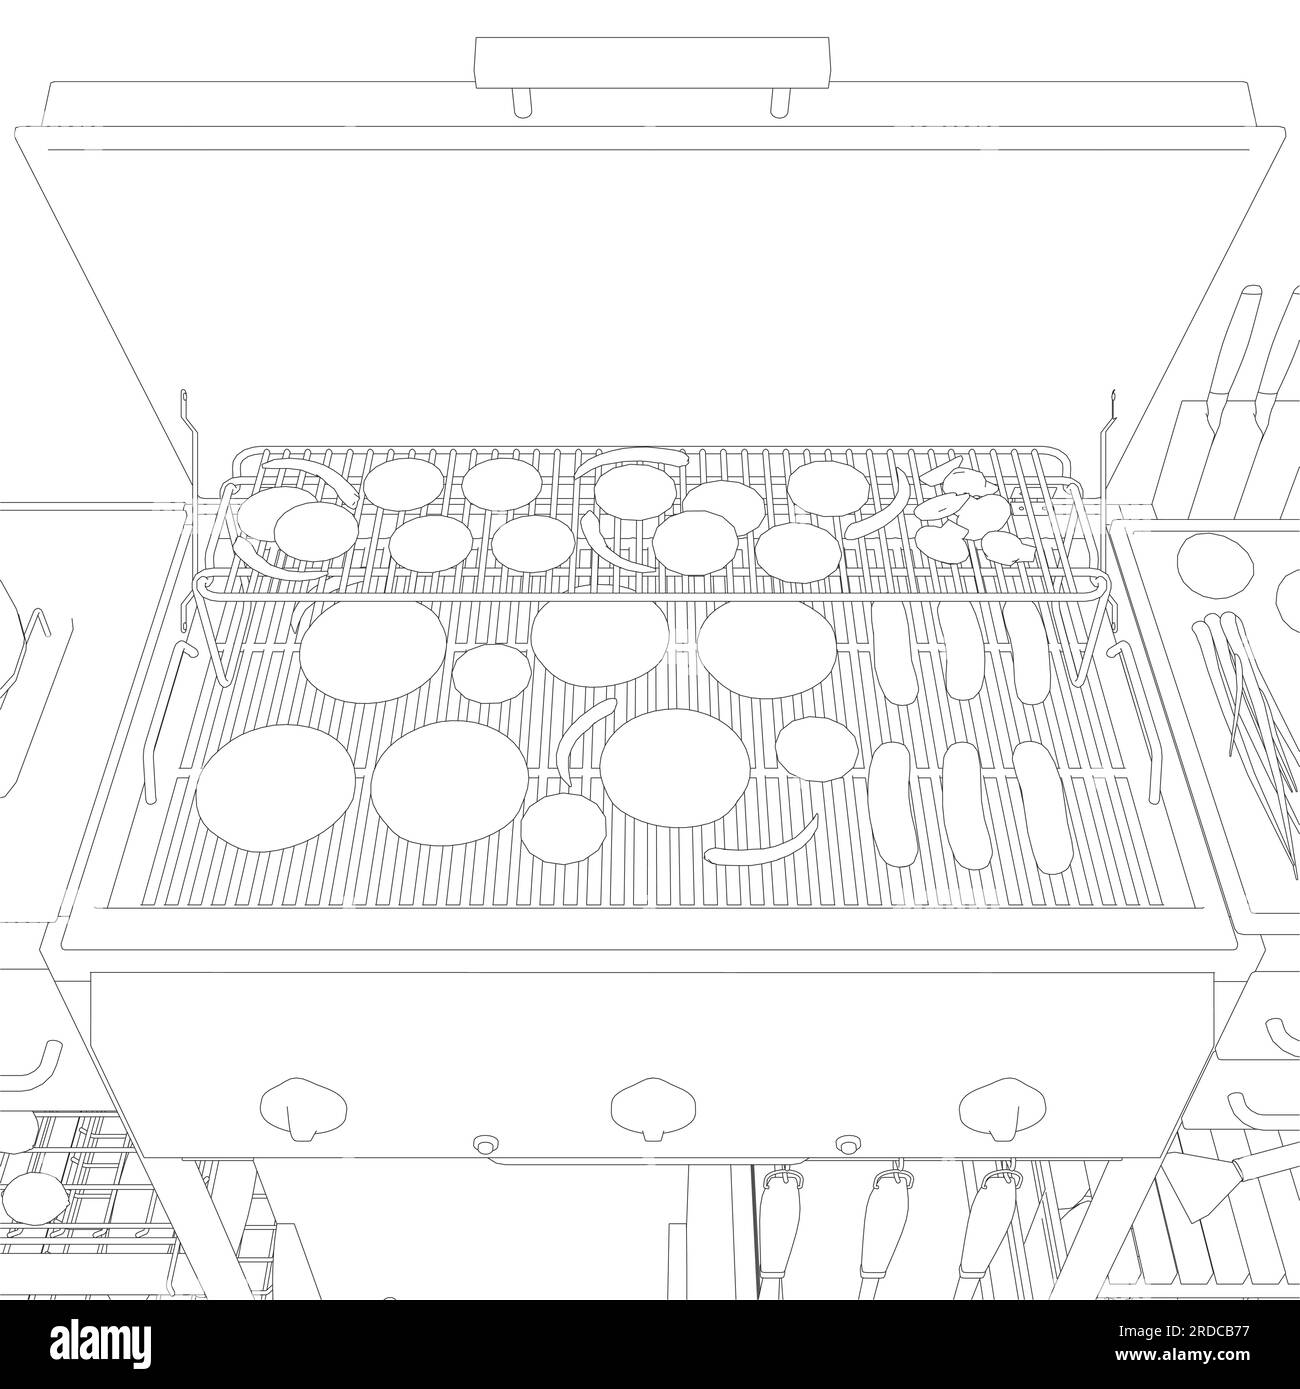 Barbecue/BBQ Gas Grill Clipart - Outline. Vektorgrafik zum Kochen von Speisen auf einem Holzkohlegrill. Stock Vektor